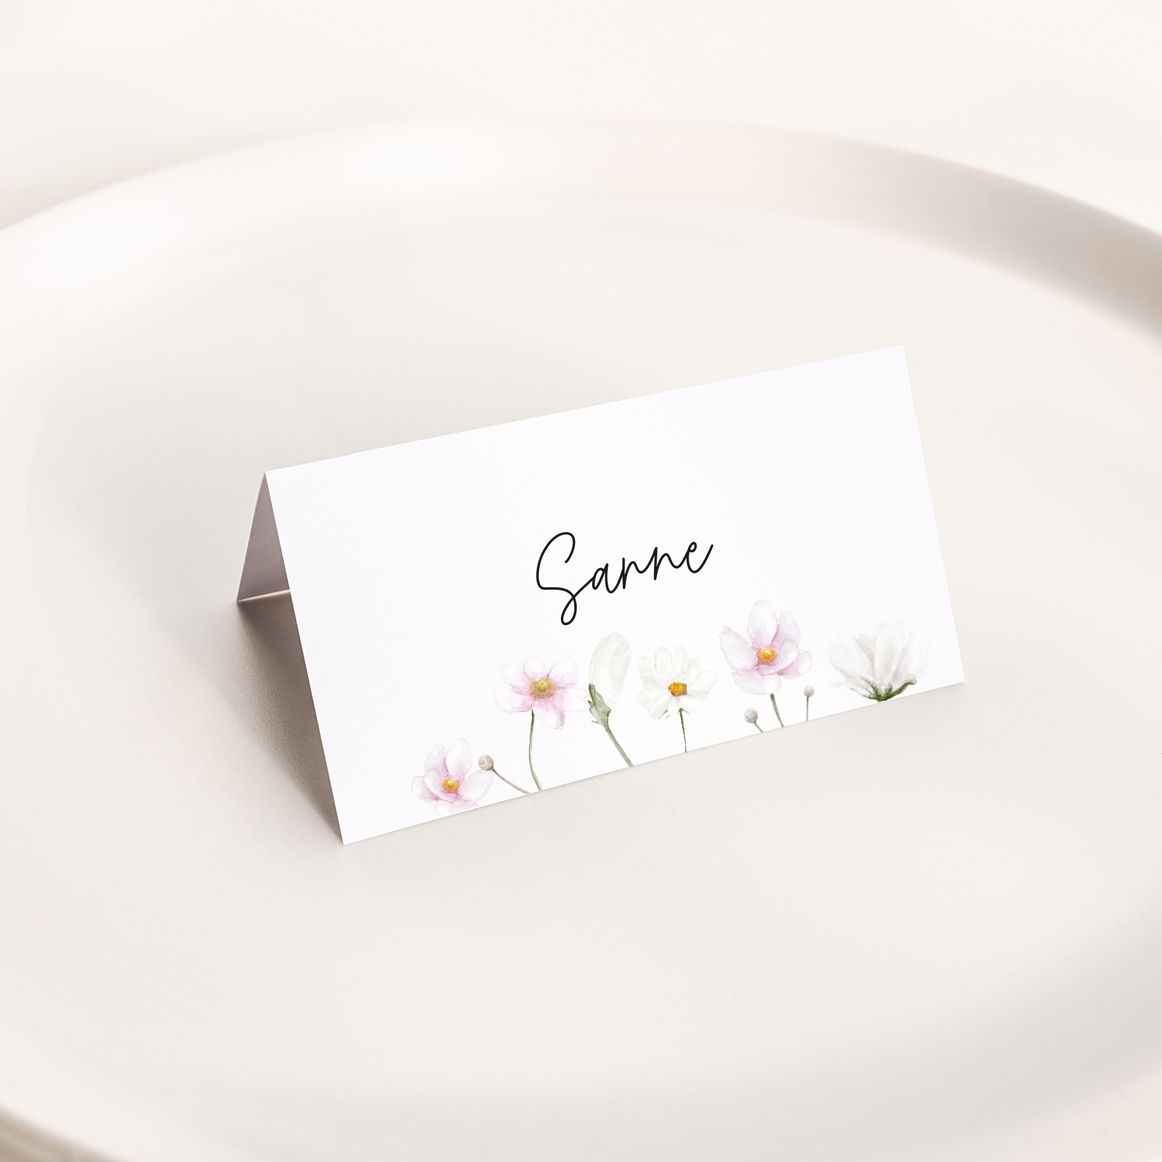 Super flotte og enkelte bordkort med anemoner. Velegnet som bordkort til enhver festlig lejlighed som barnedåb, bryllup, konfirmation m.m.